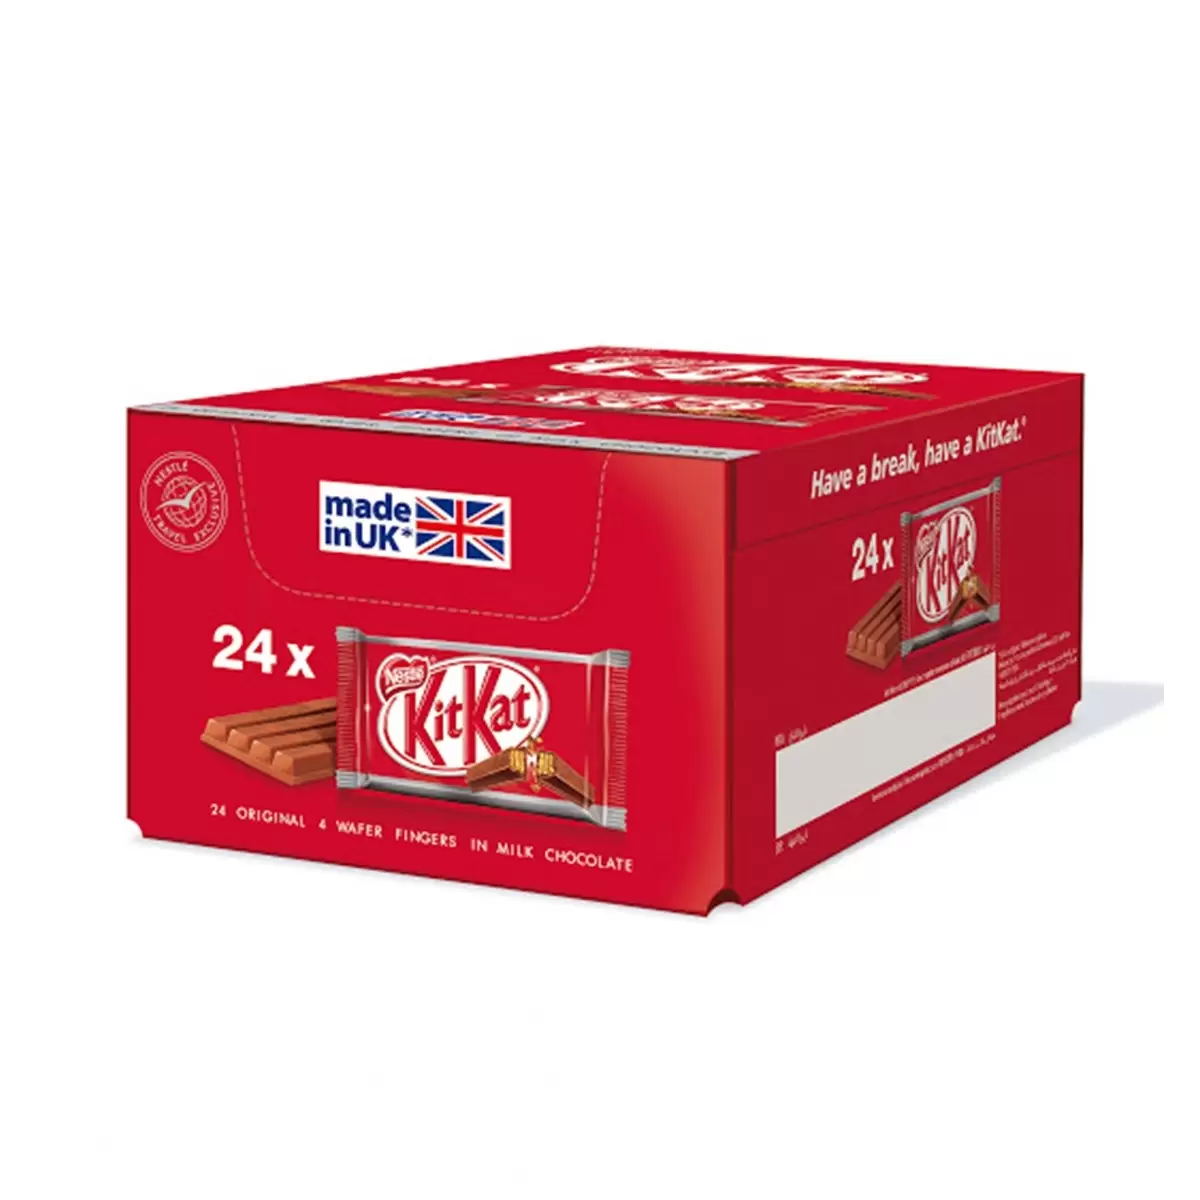 شکلات کیت کت انگلستان 41 گرمی